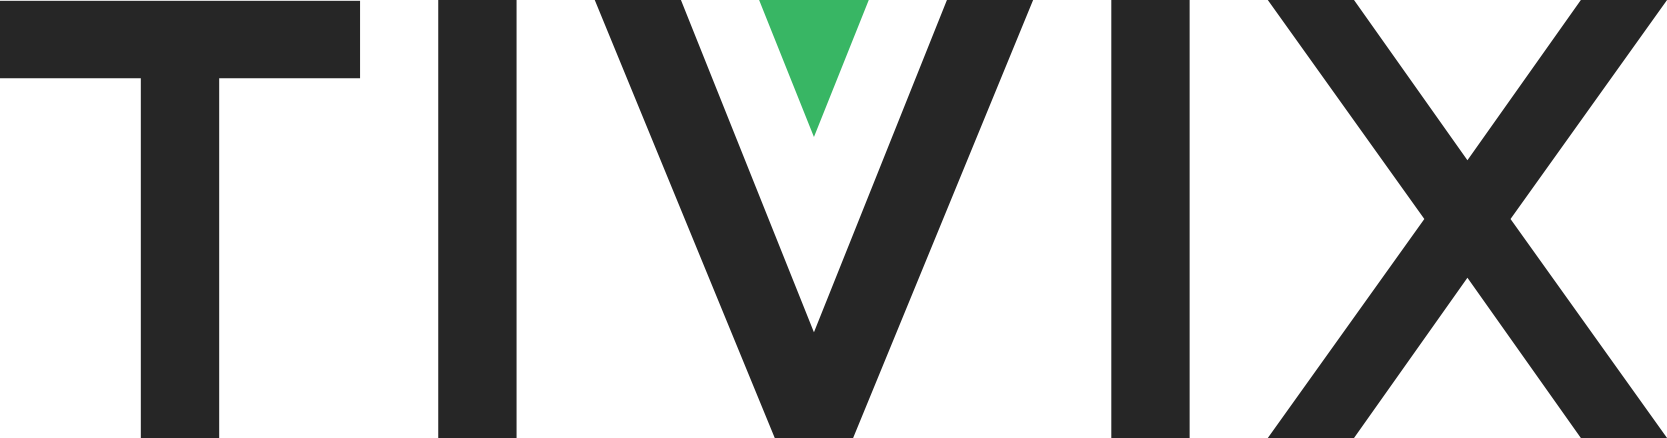 Tivix logo